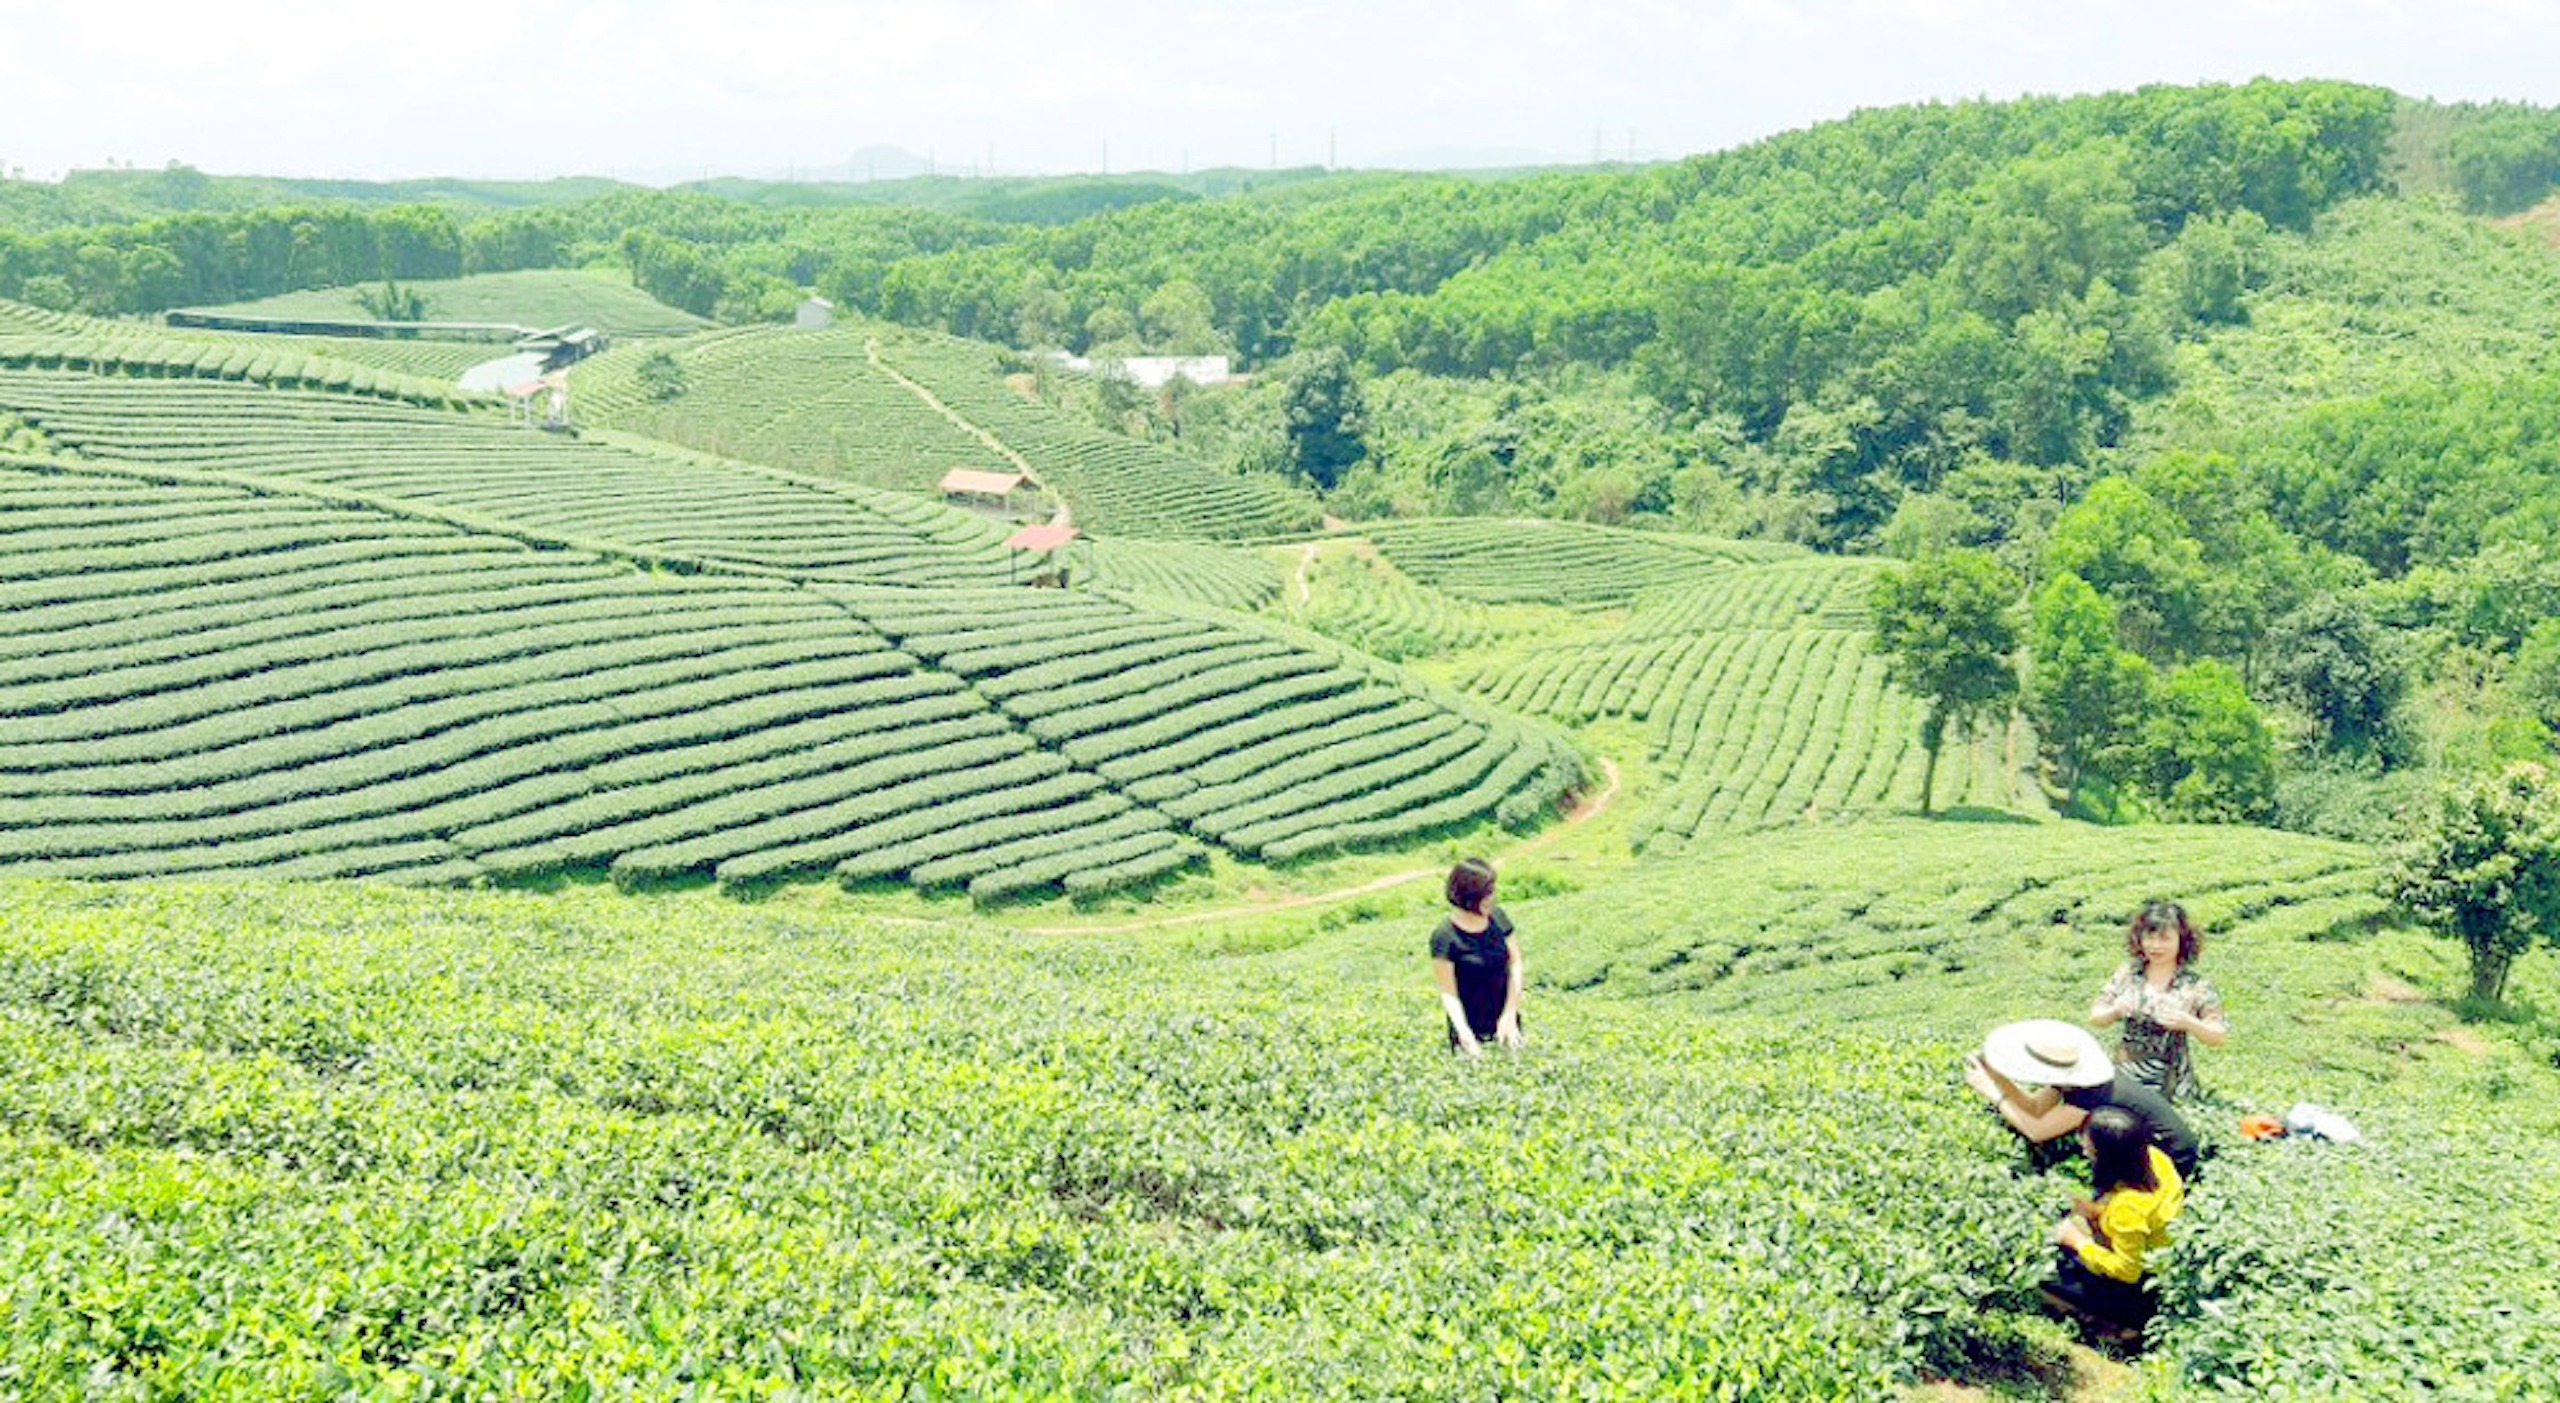 Du khách được trải nghiệm hái chè tại đồi chè ở huyện Hải Hà, Quảng Ninh.